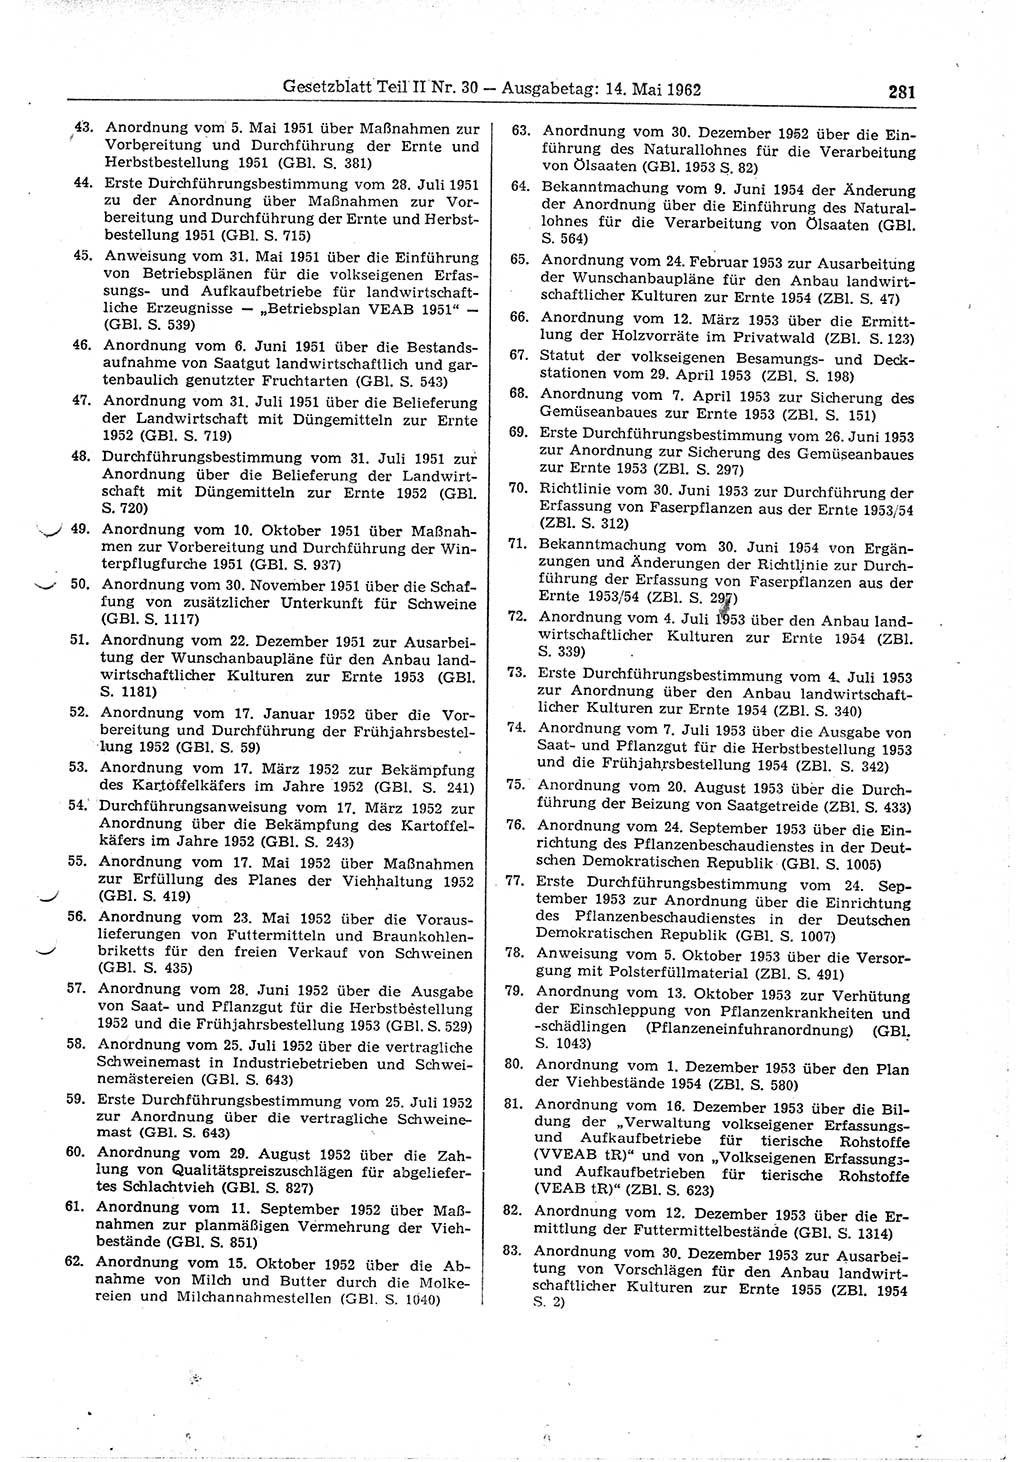 Gesetzblatt (GBl.) der Deutschen Demokratischen Republik (DDR) Teil ⅠⅠ 1962, Seite 281 (GBl. DDR ⅠⅠ 1962, S. 281)